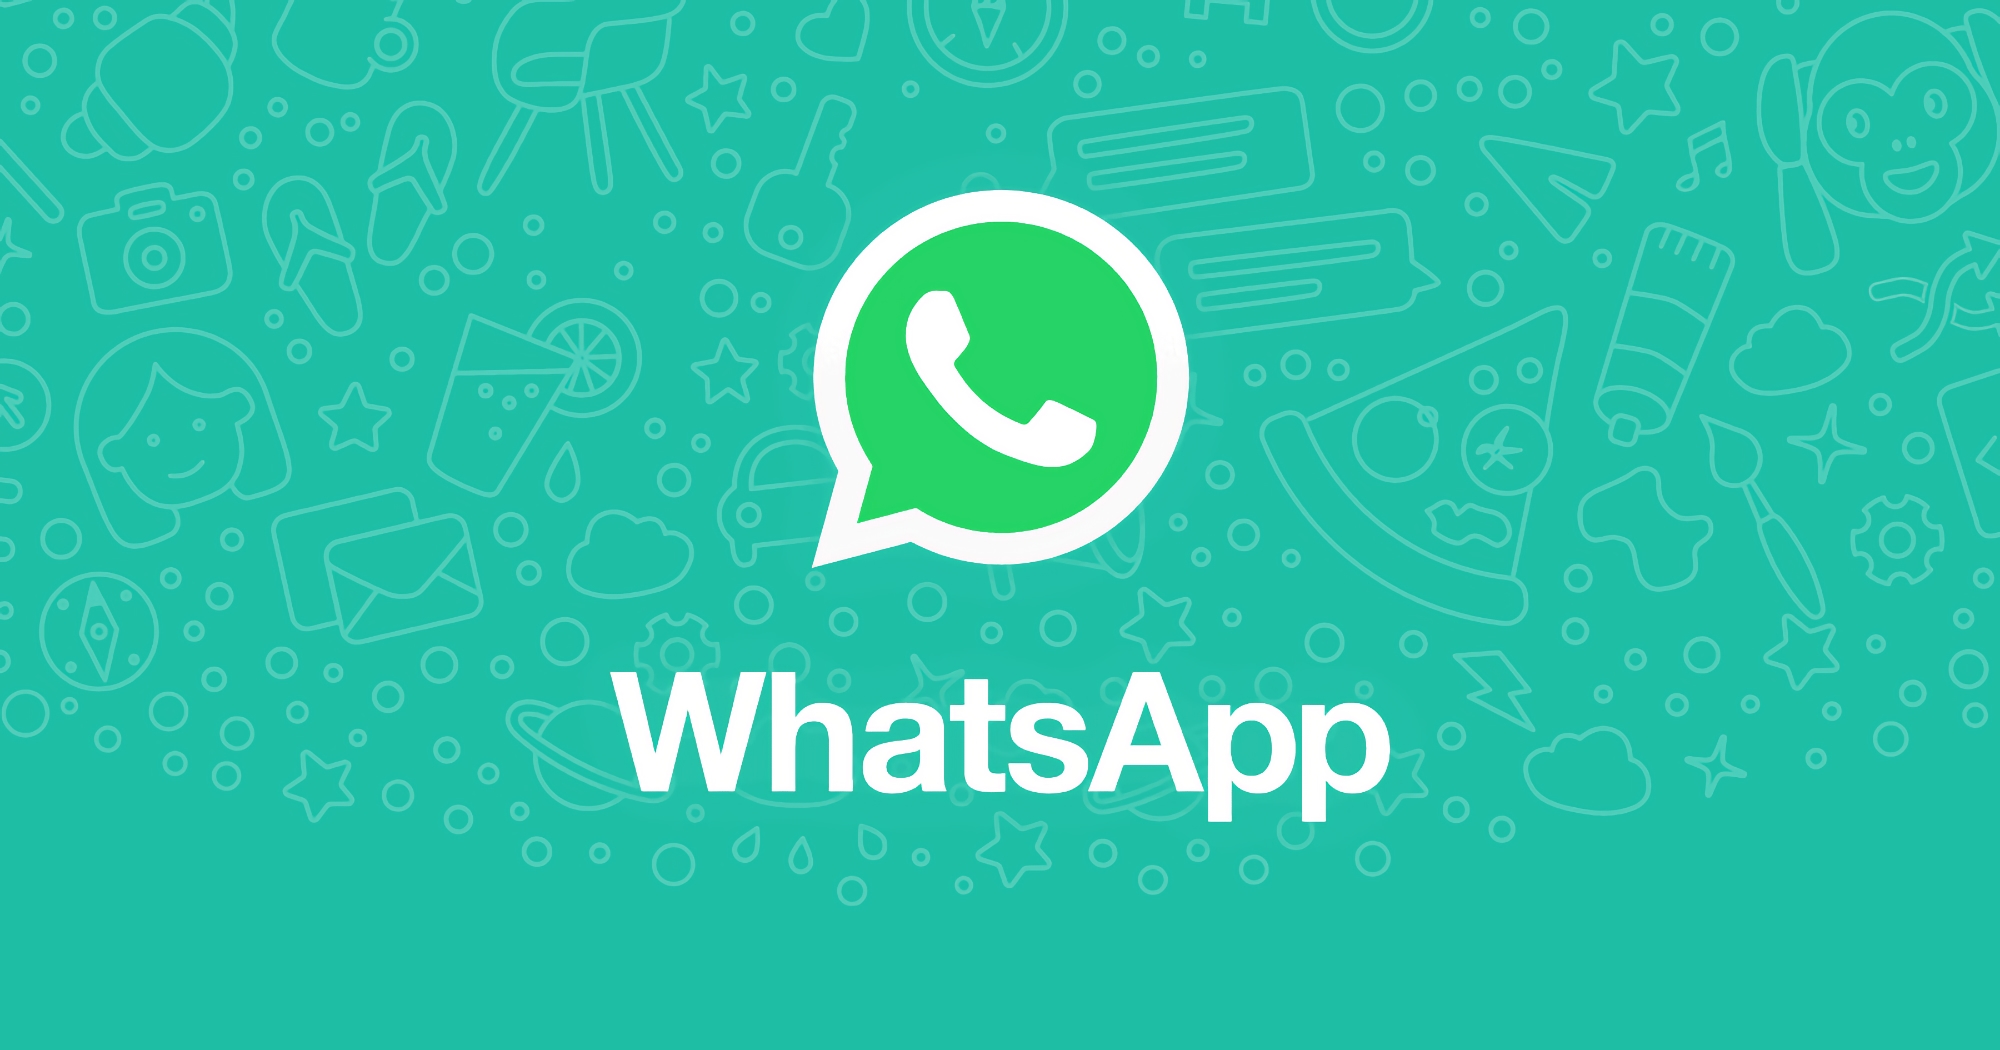 WhatsApp arbeitet am Companion Mode, mit dem Sie den Messenger auf zwei Smartphones nutzen können